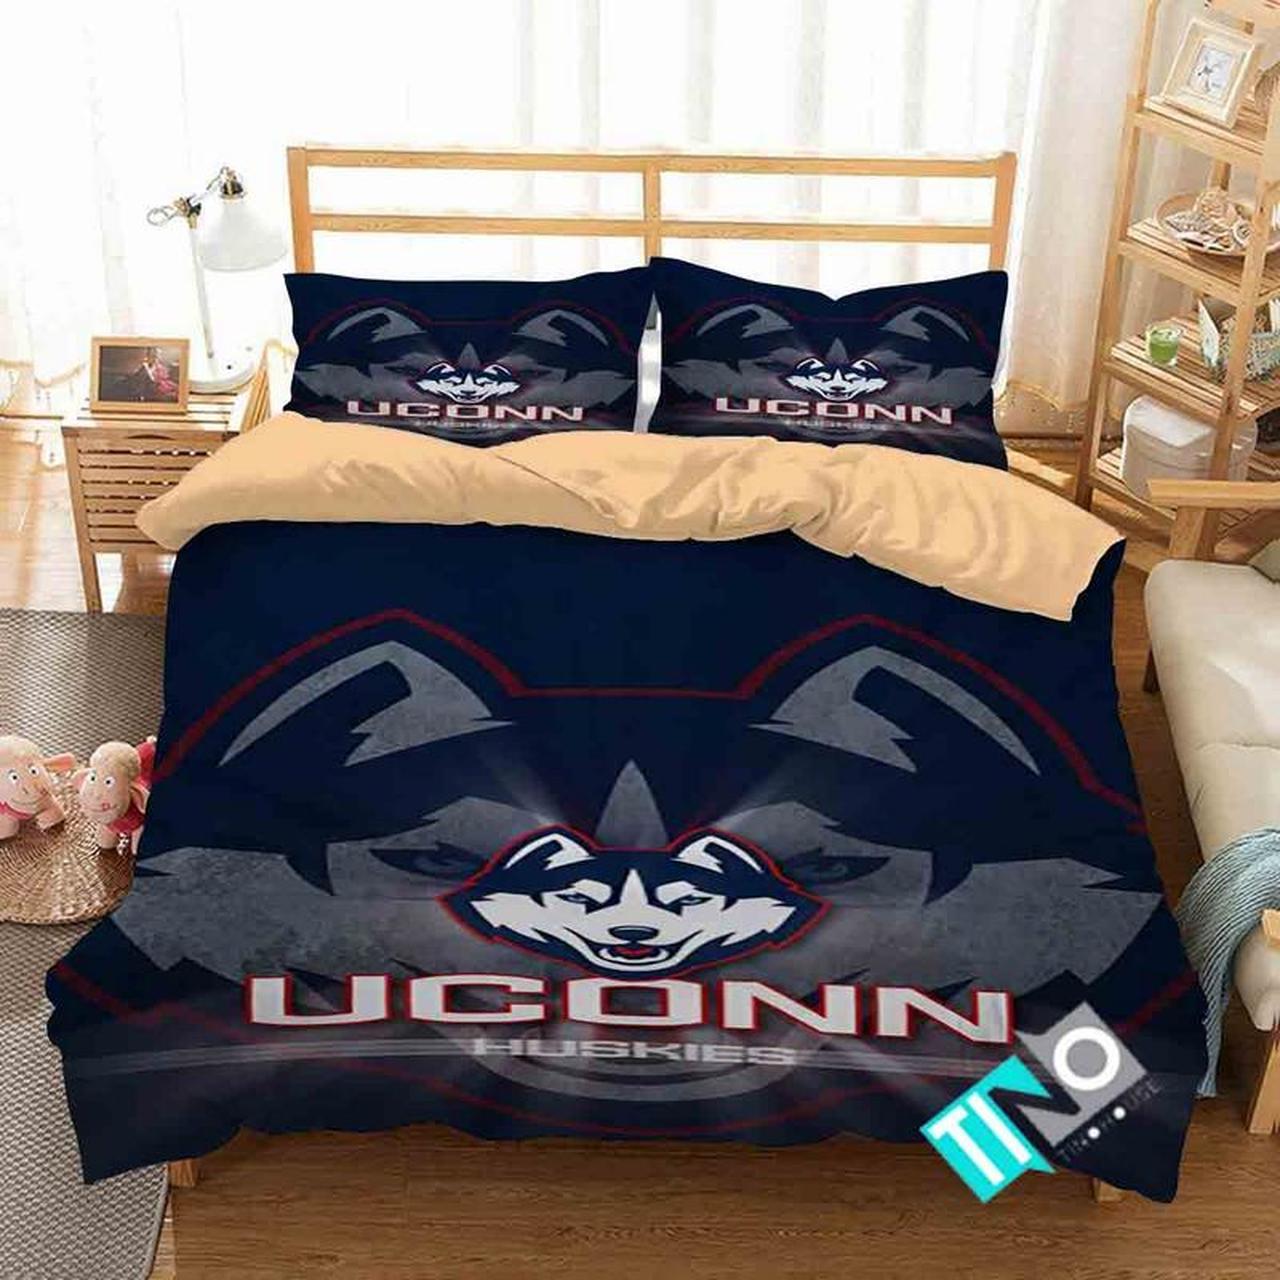 BEST UConn Huskies NCAA blue Duvet Cover Bedding Set